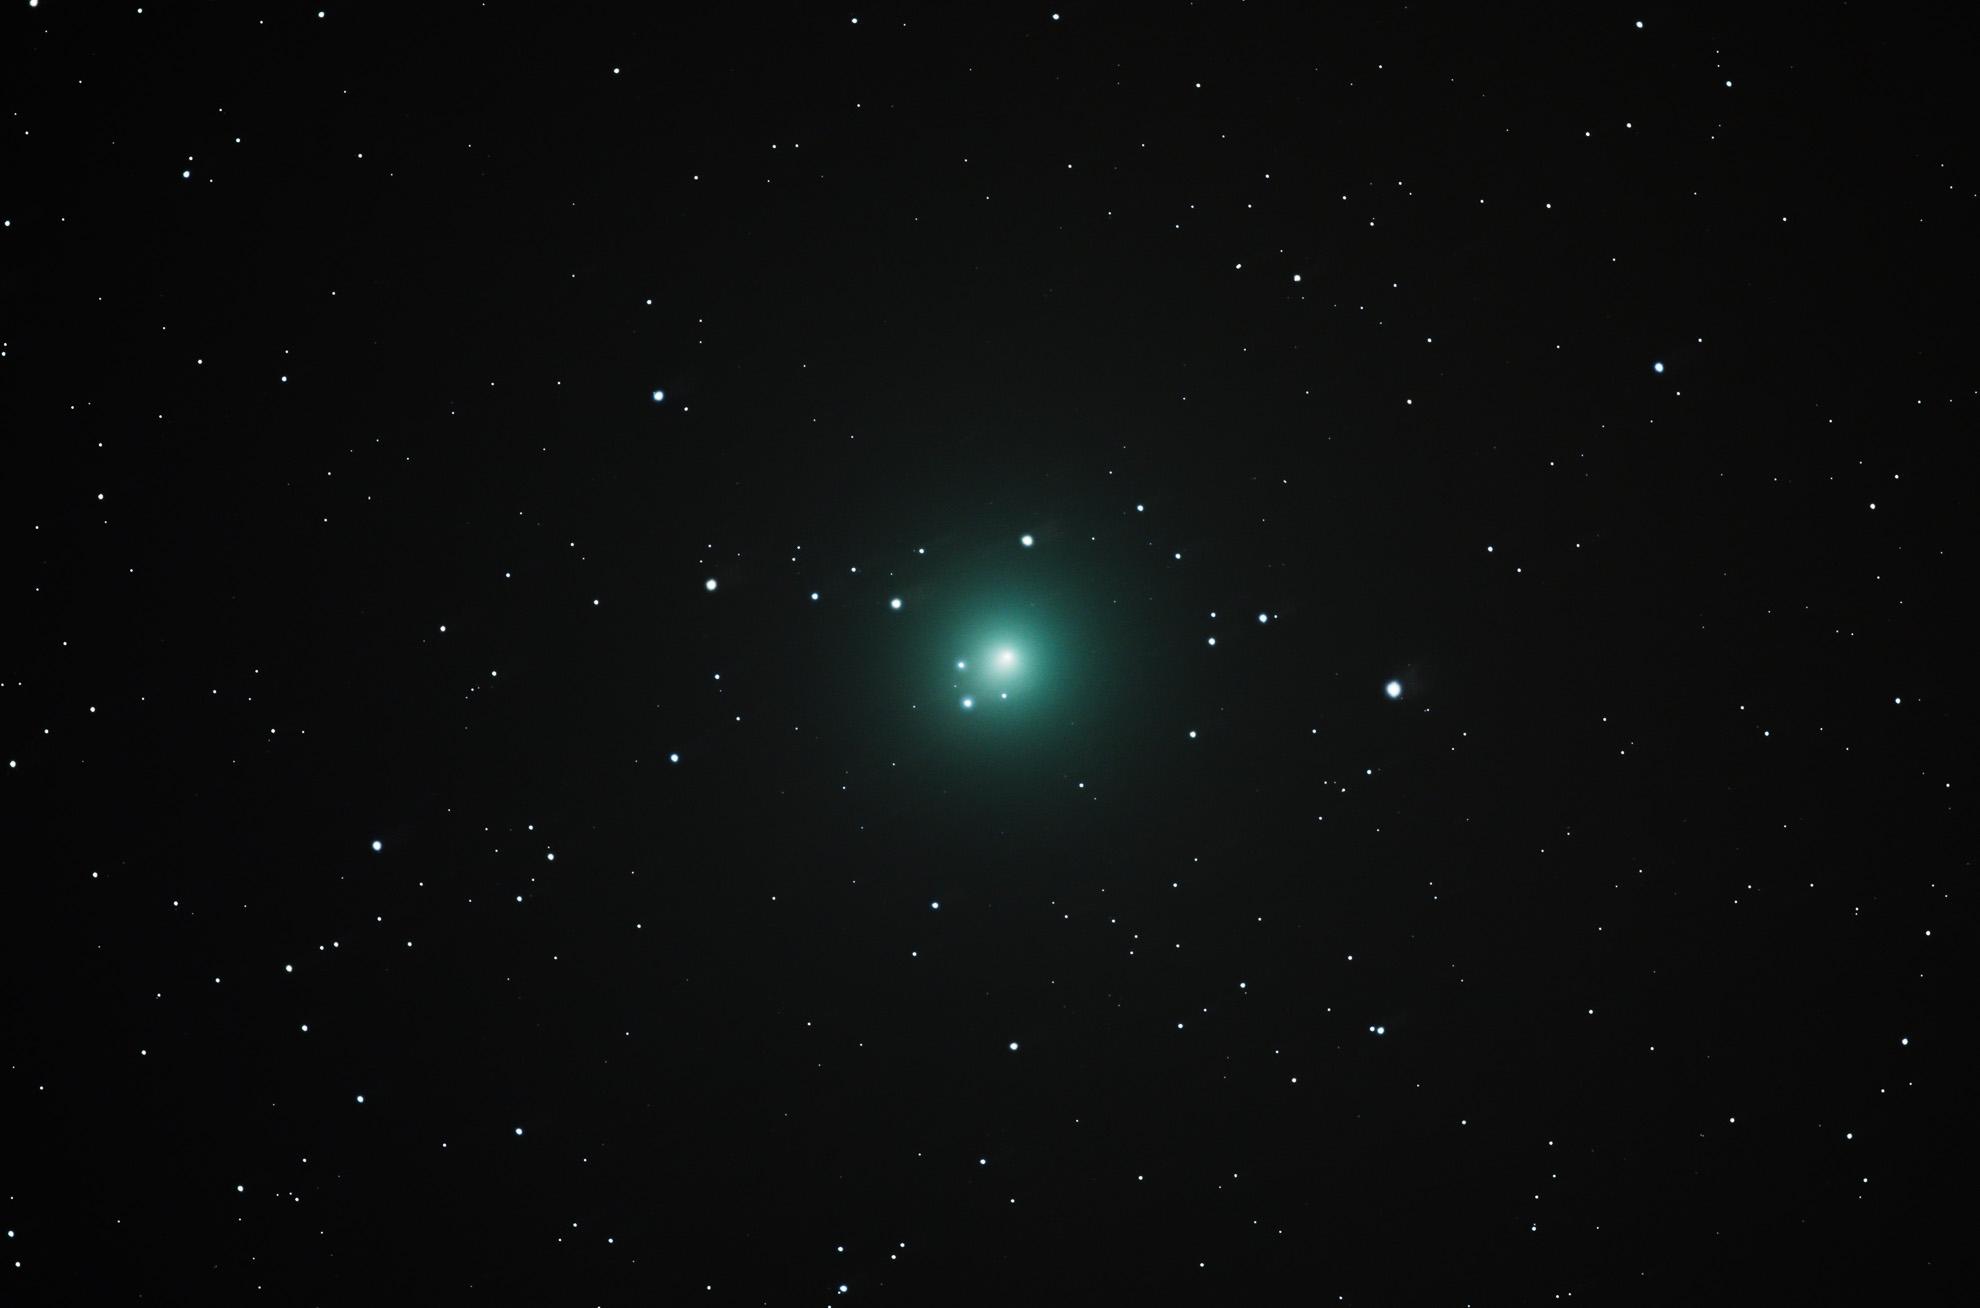 Comet 46P/Wirtanen by Arun Hegde 